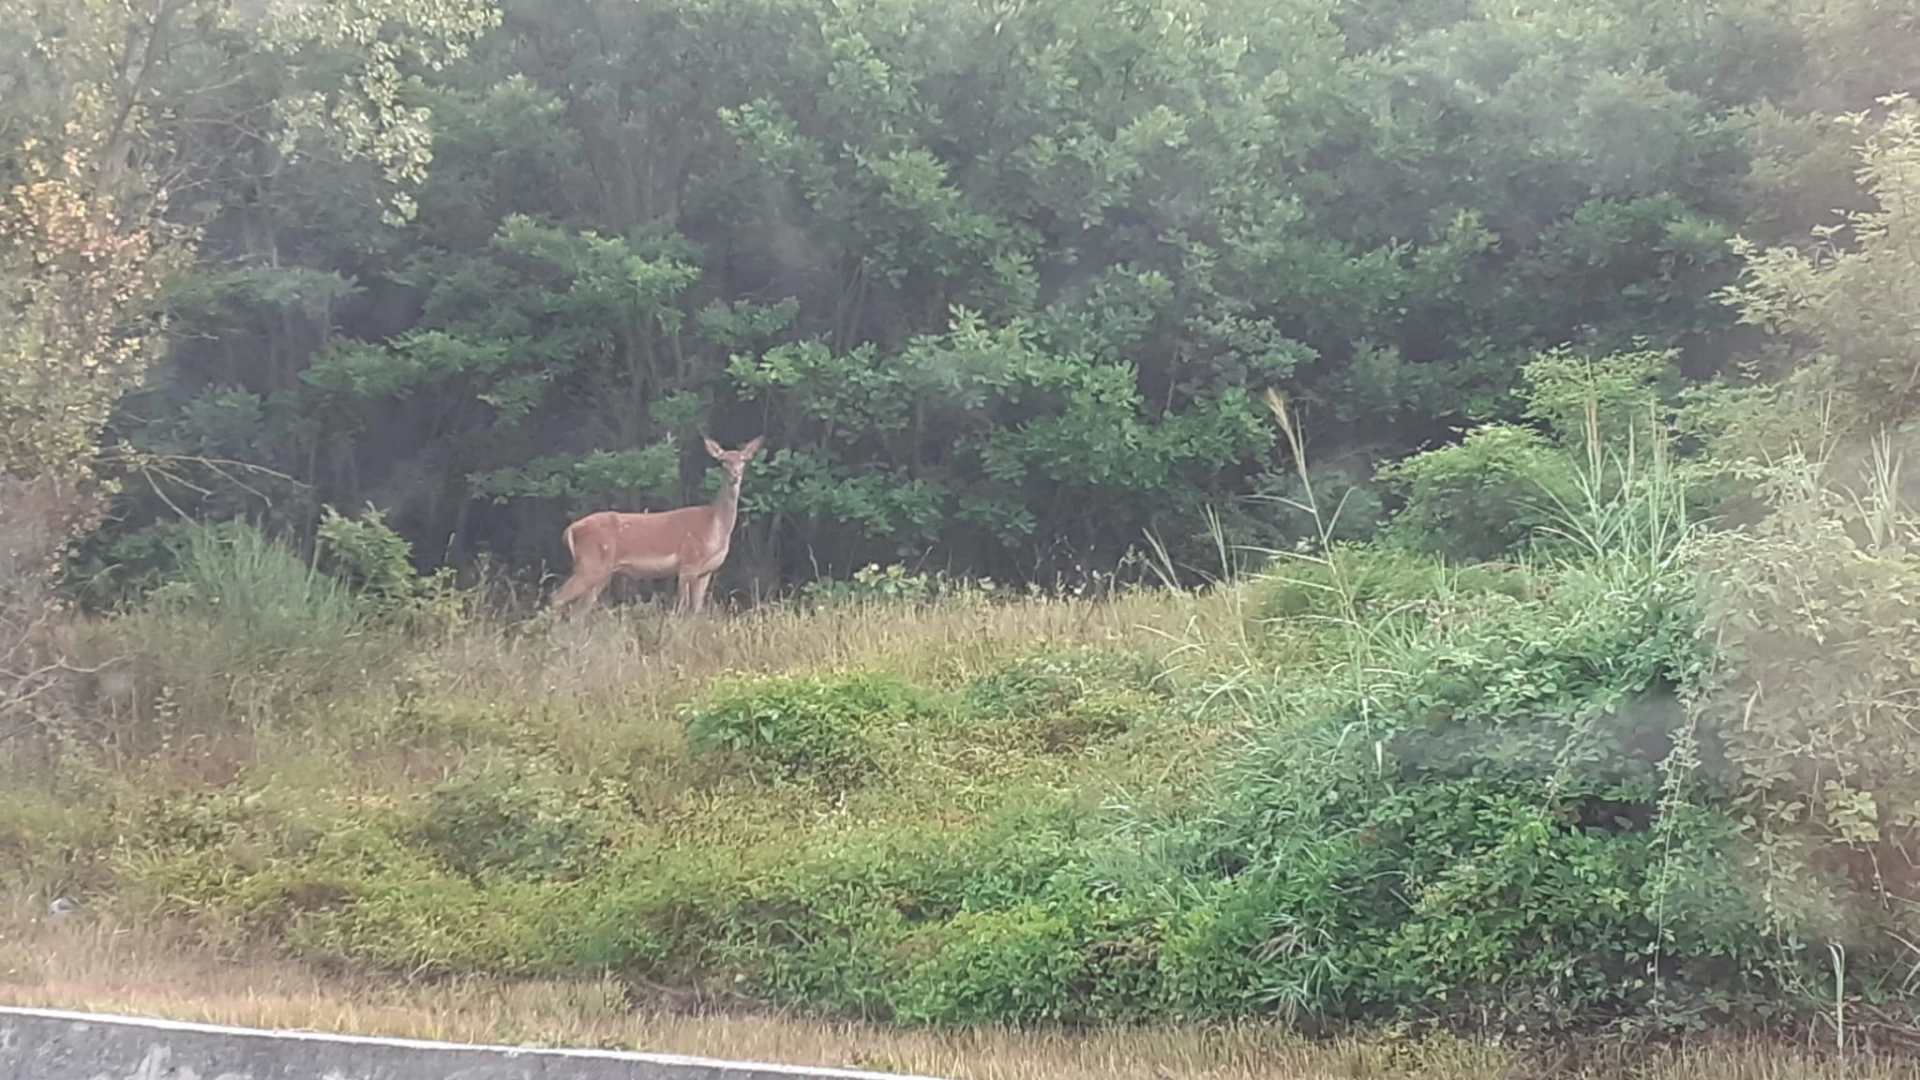 Fornelli: esemplare di cervo avvistato a bordo strada dagli automobilisti questa mattina. Guarda le foto